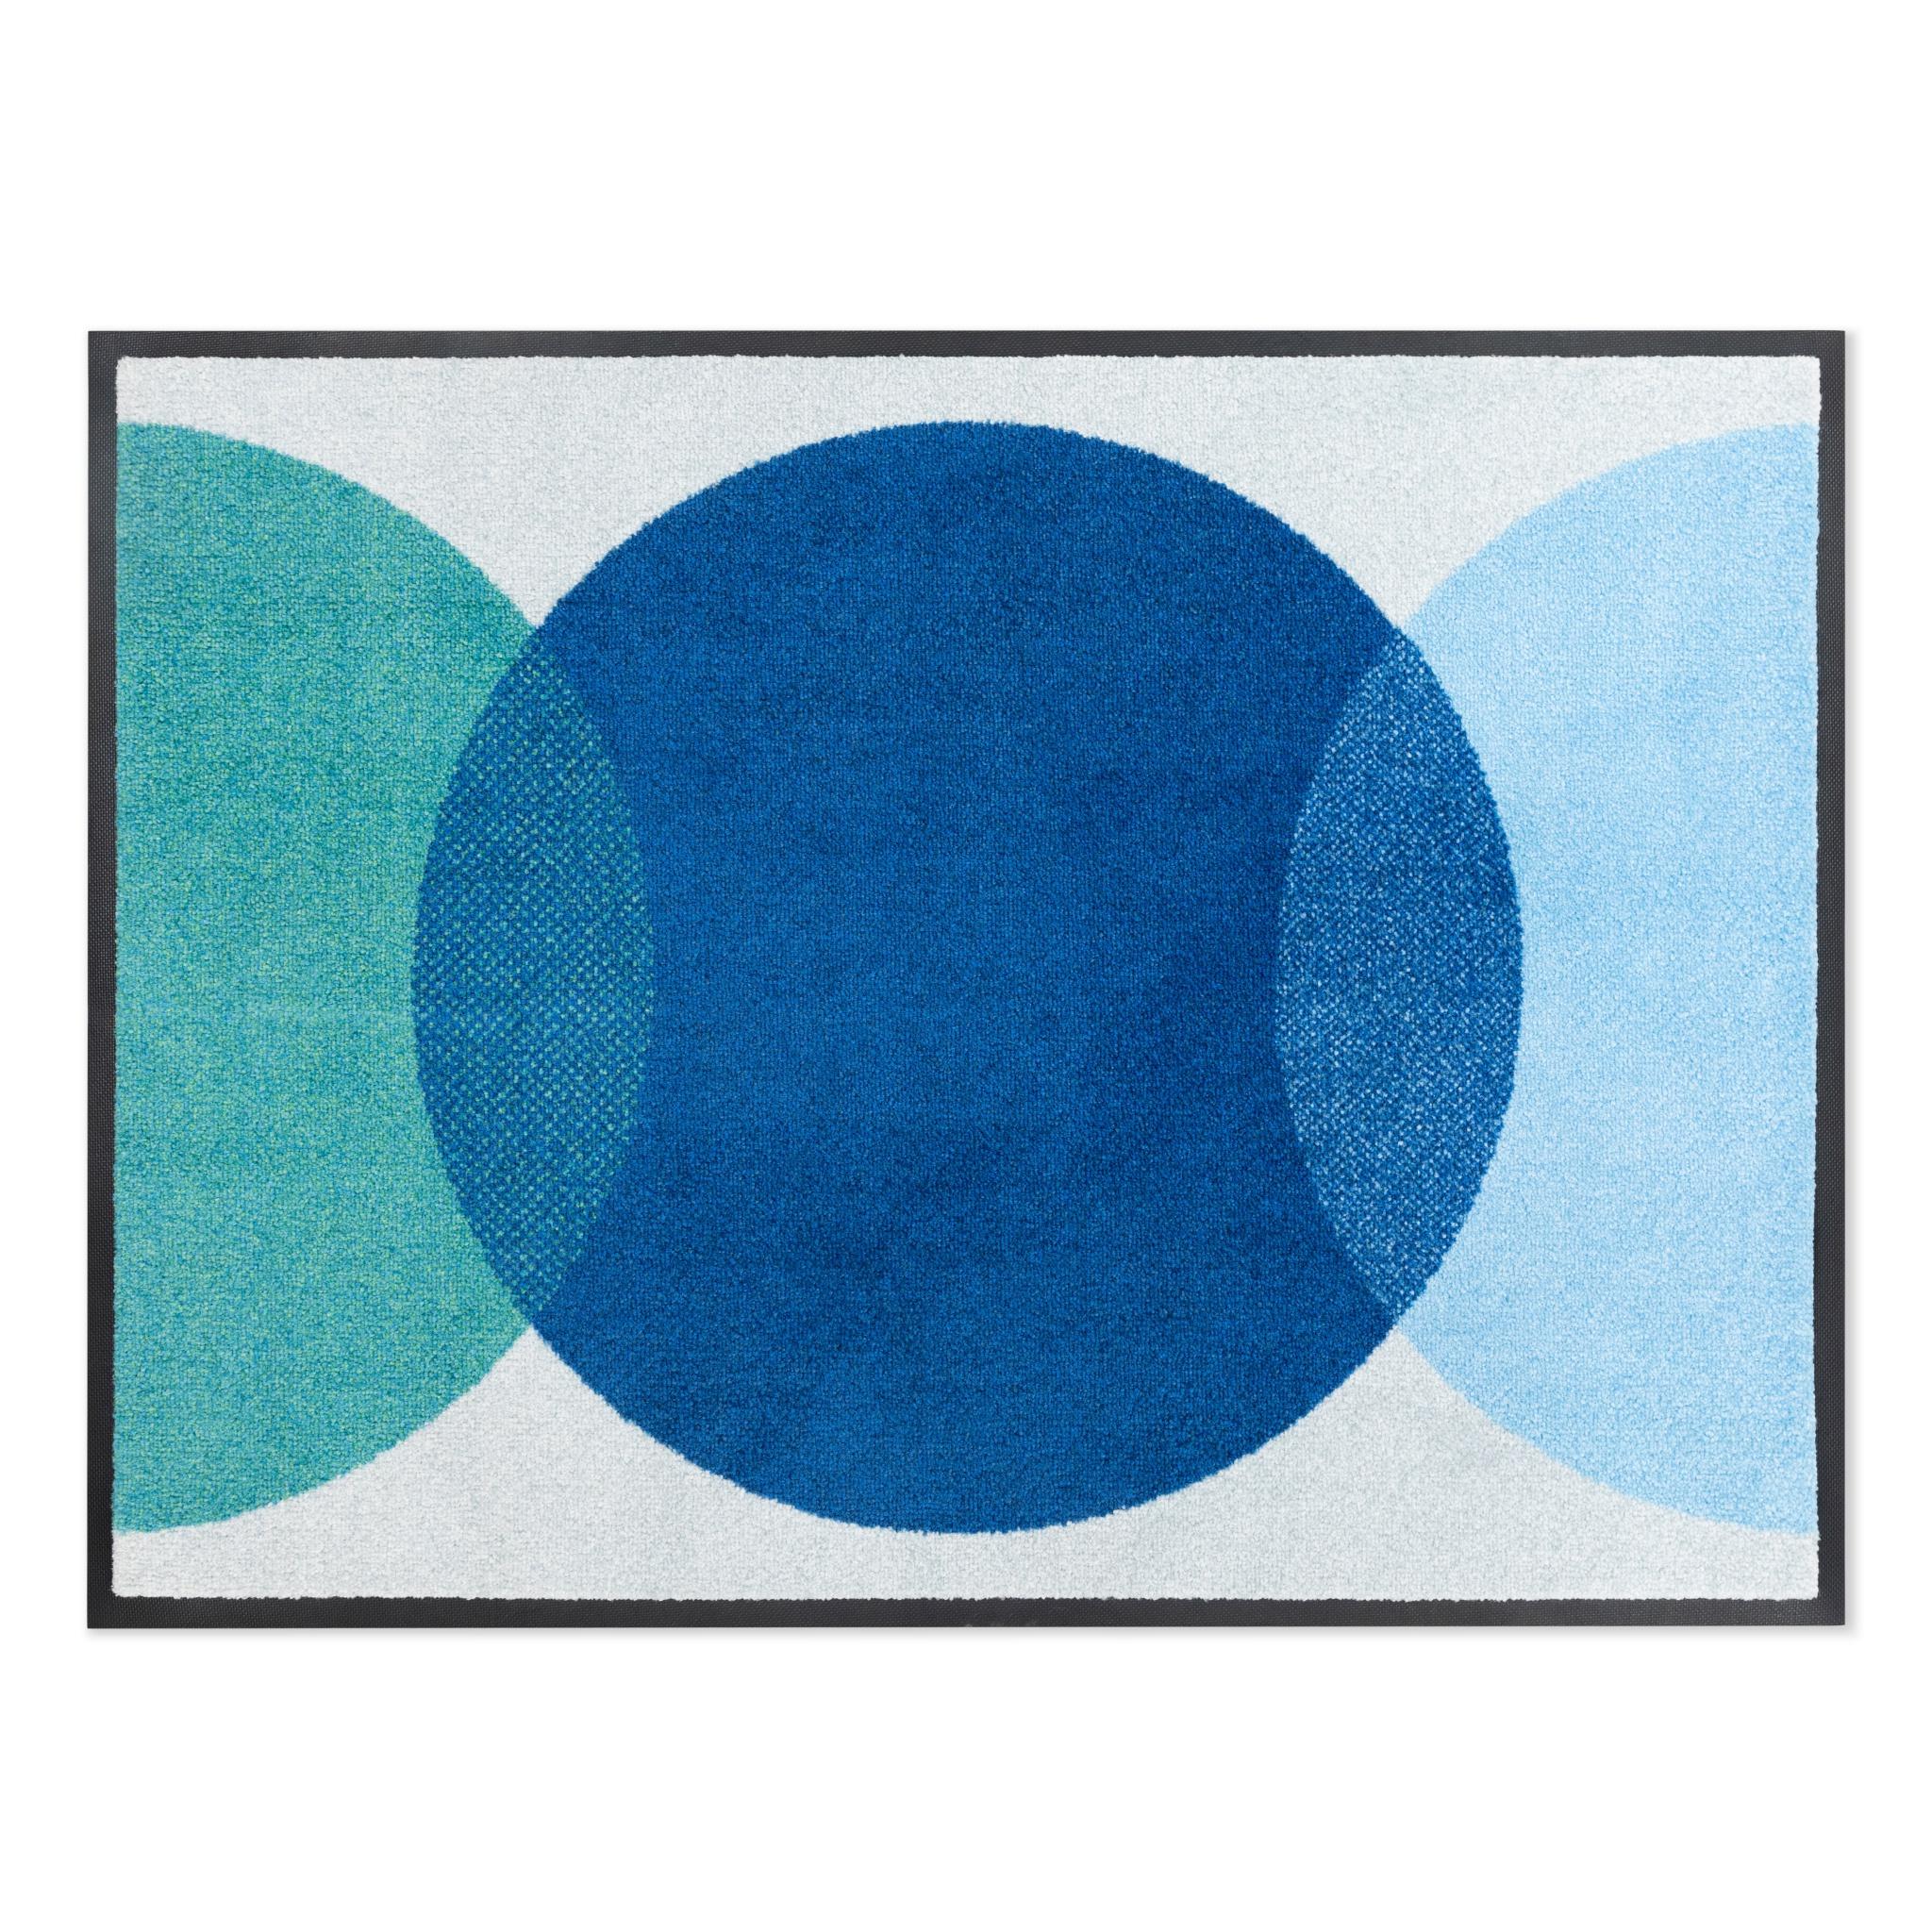 Heymat's Doormat Spot Blue, 85x115cm